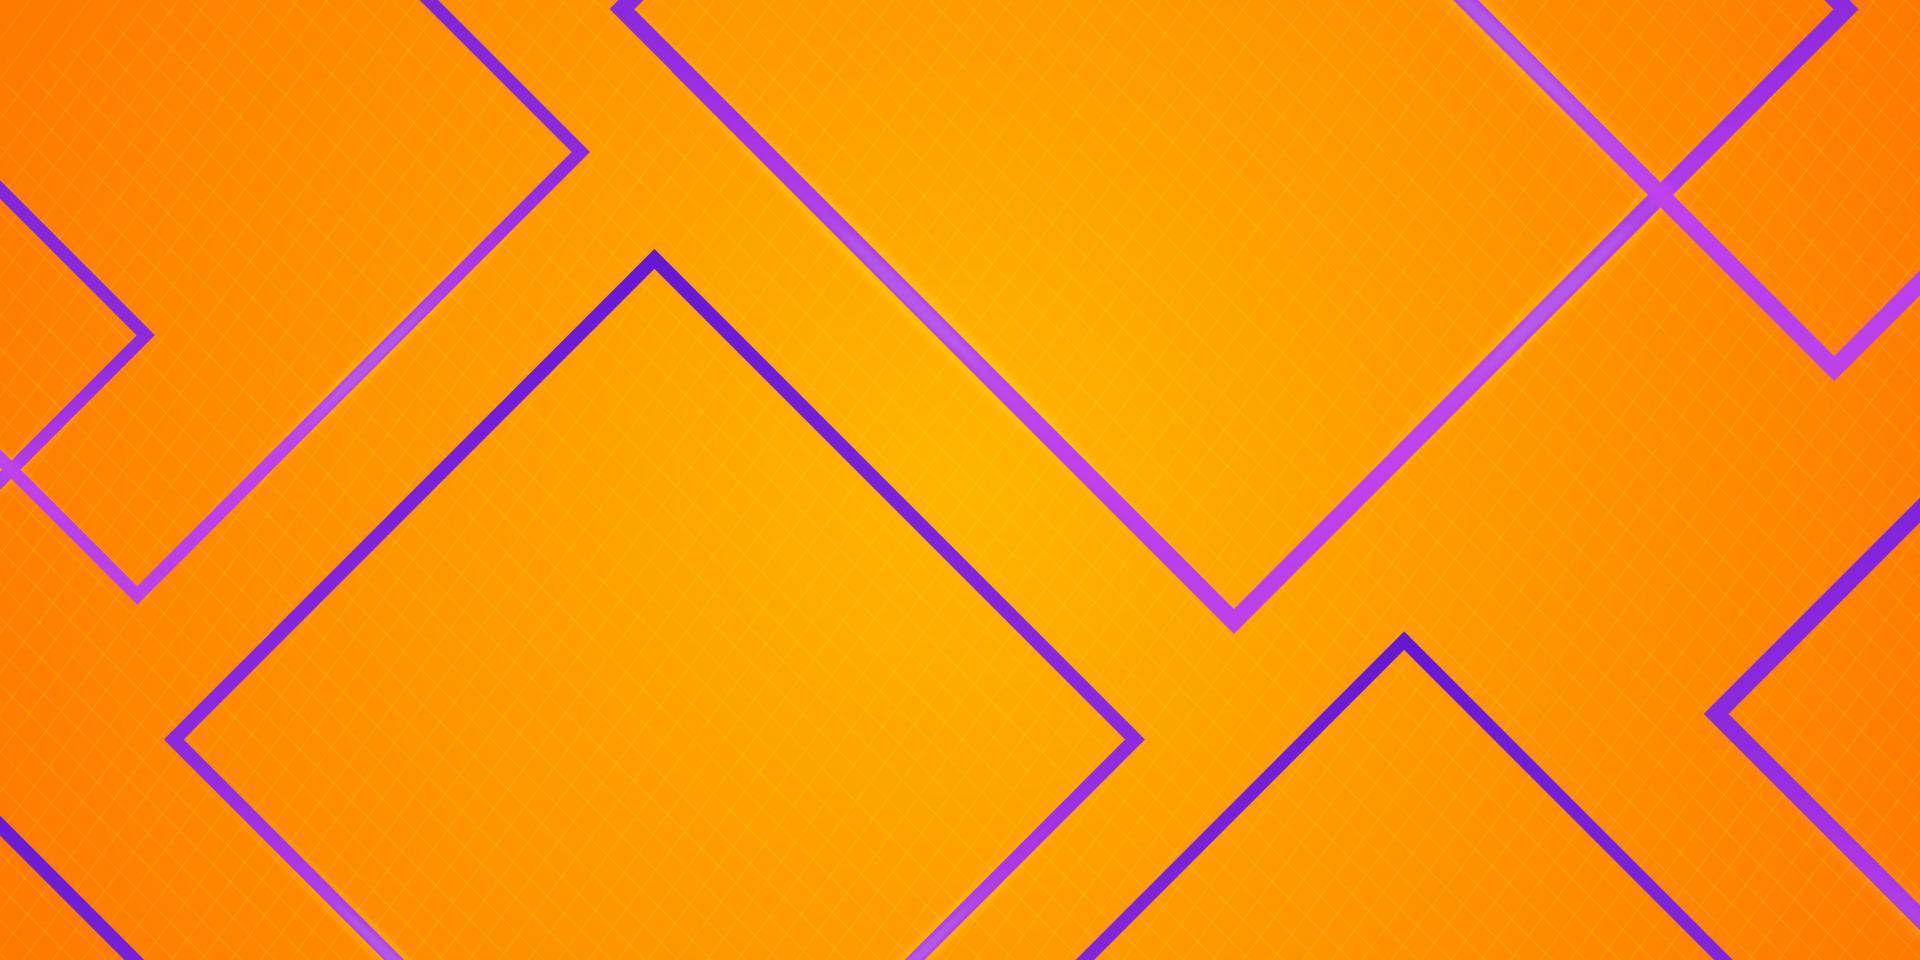 sfondo banner astratto luminoso con linee viola lucente decorazione texture per social media cover design, sfondo presentazione, banner tecnologico in vettore arancione.eps10